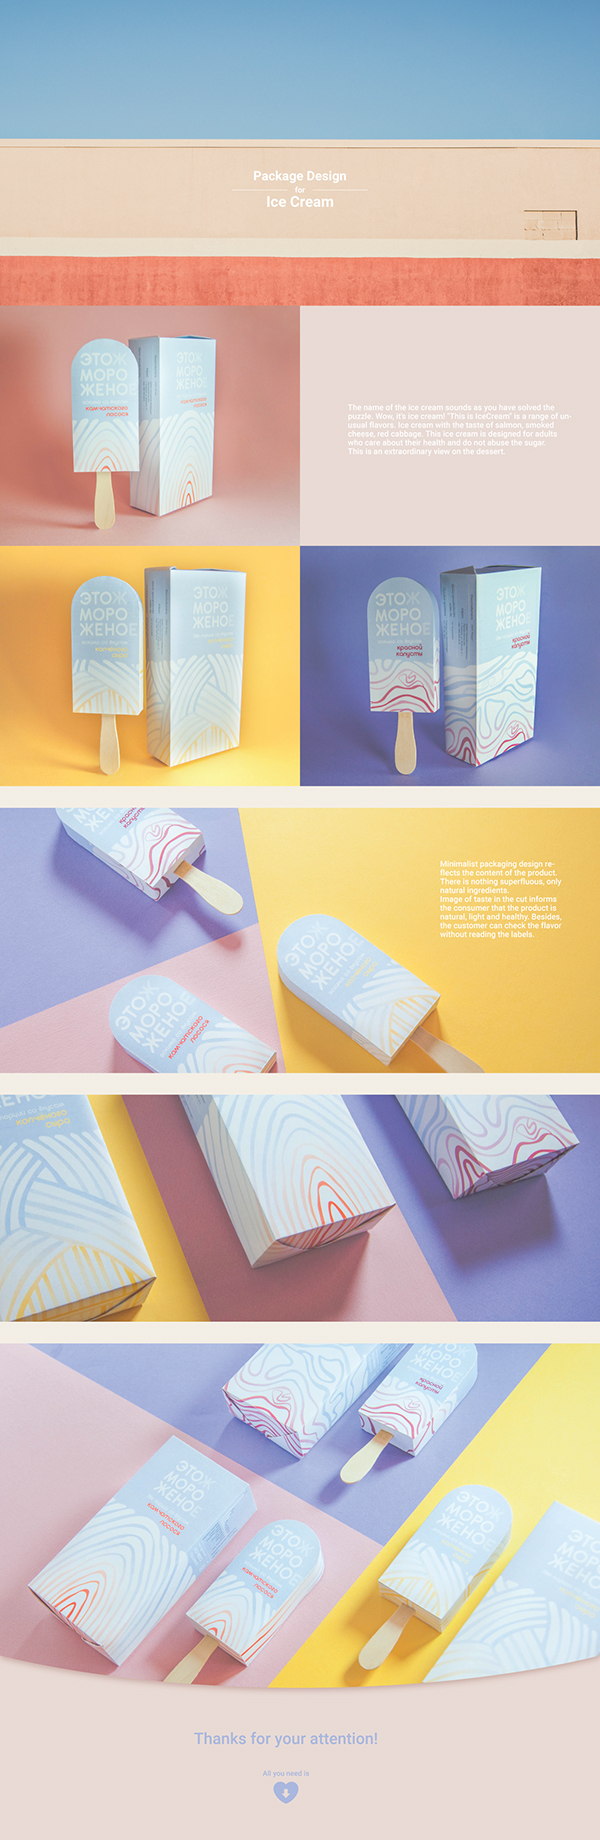 Package Design: Ice Cream